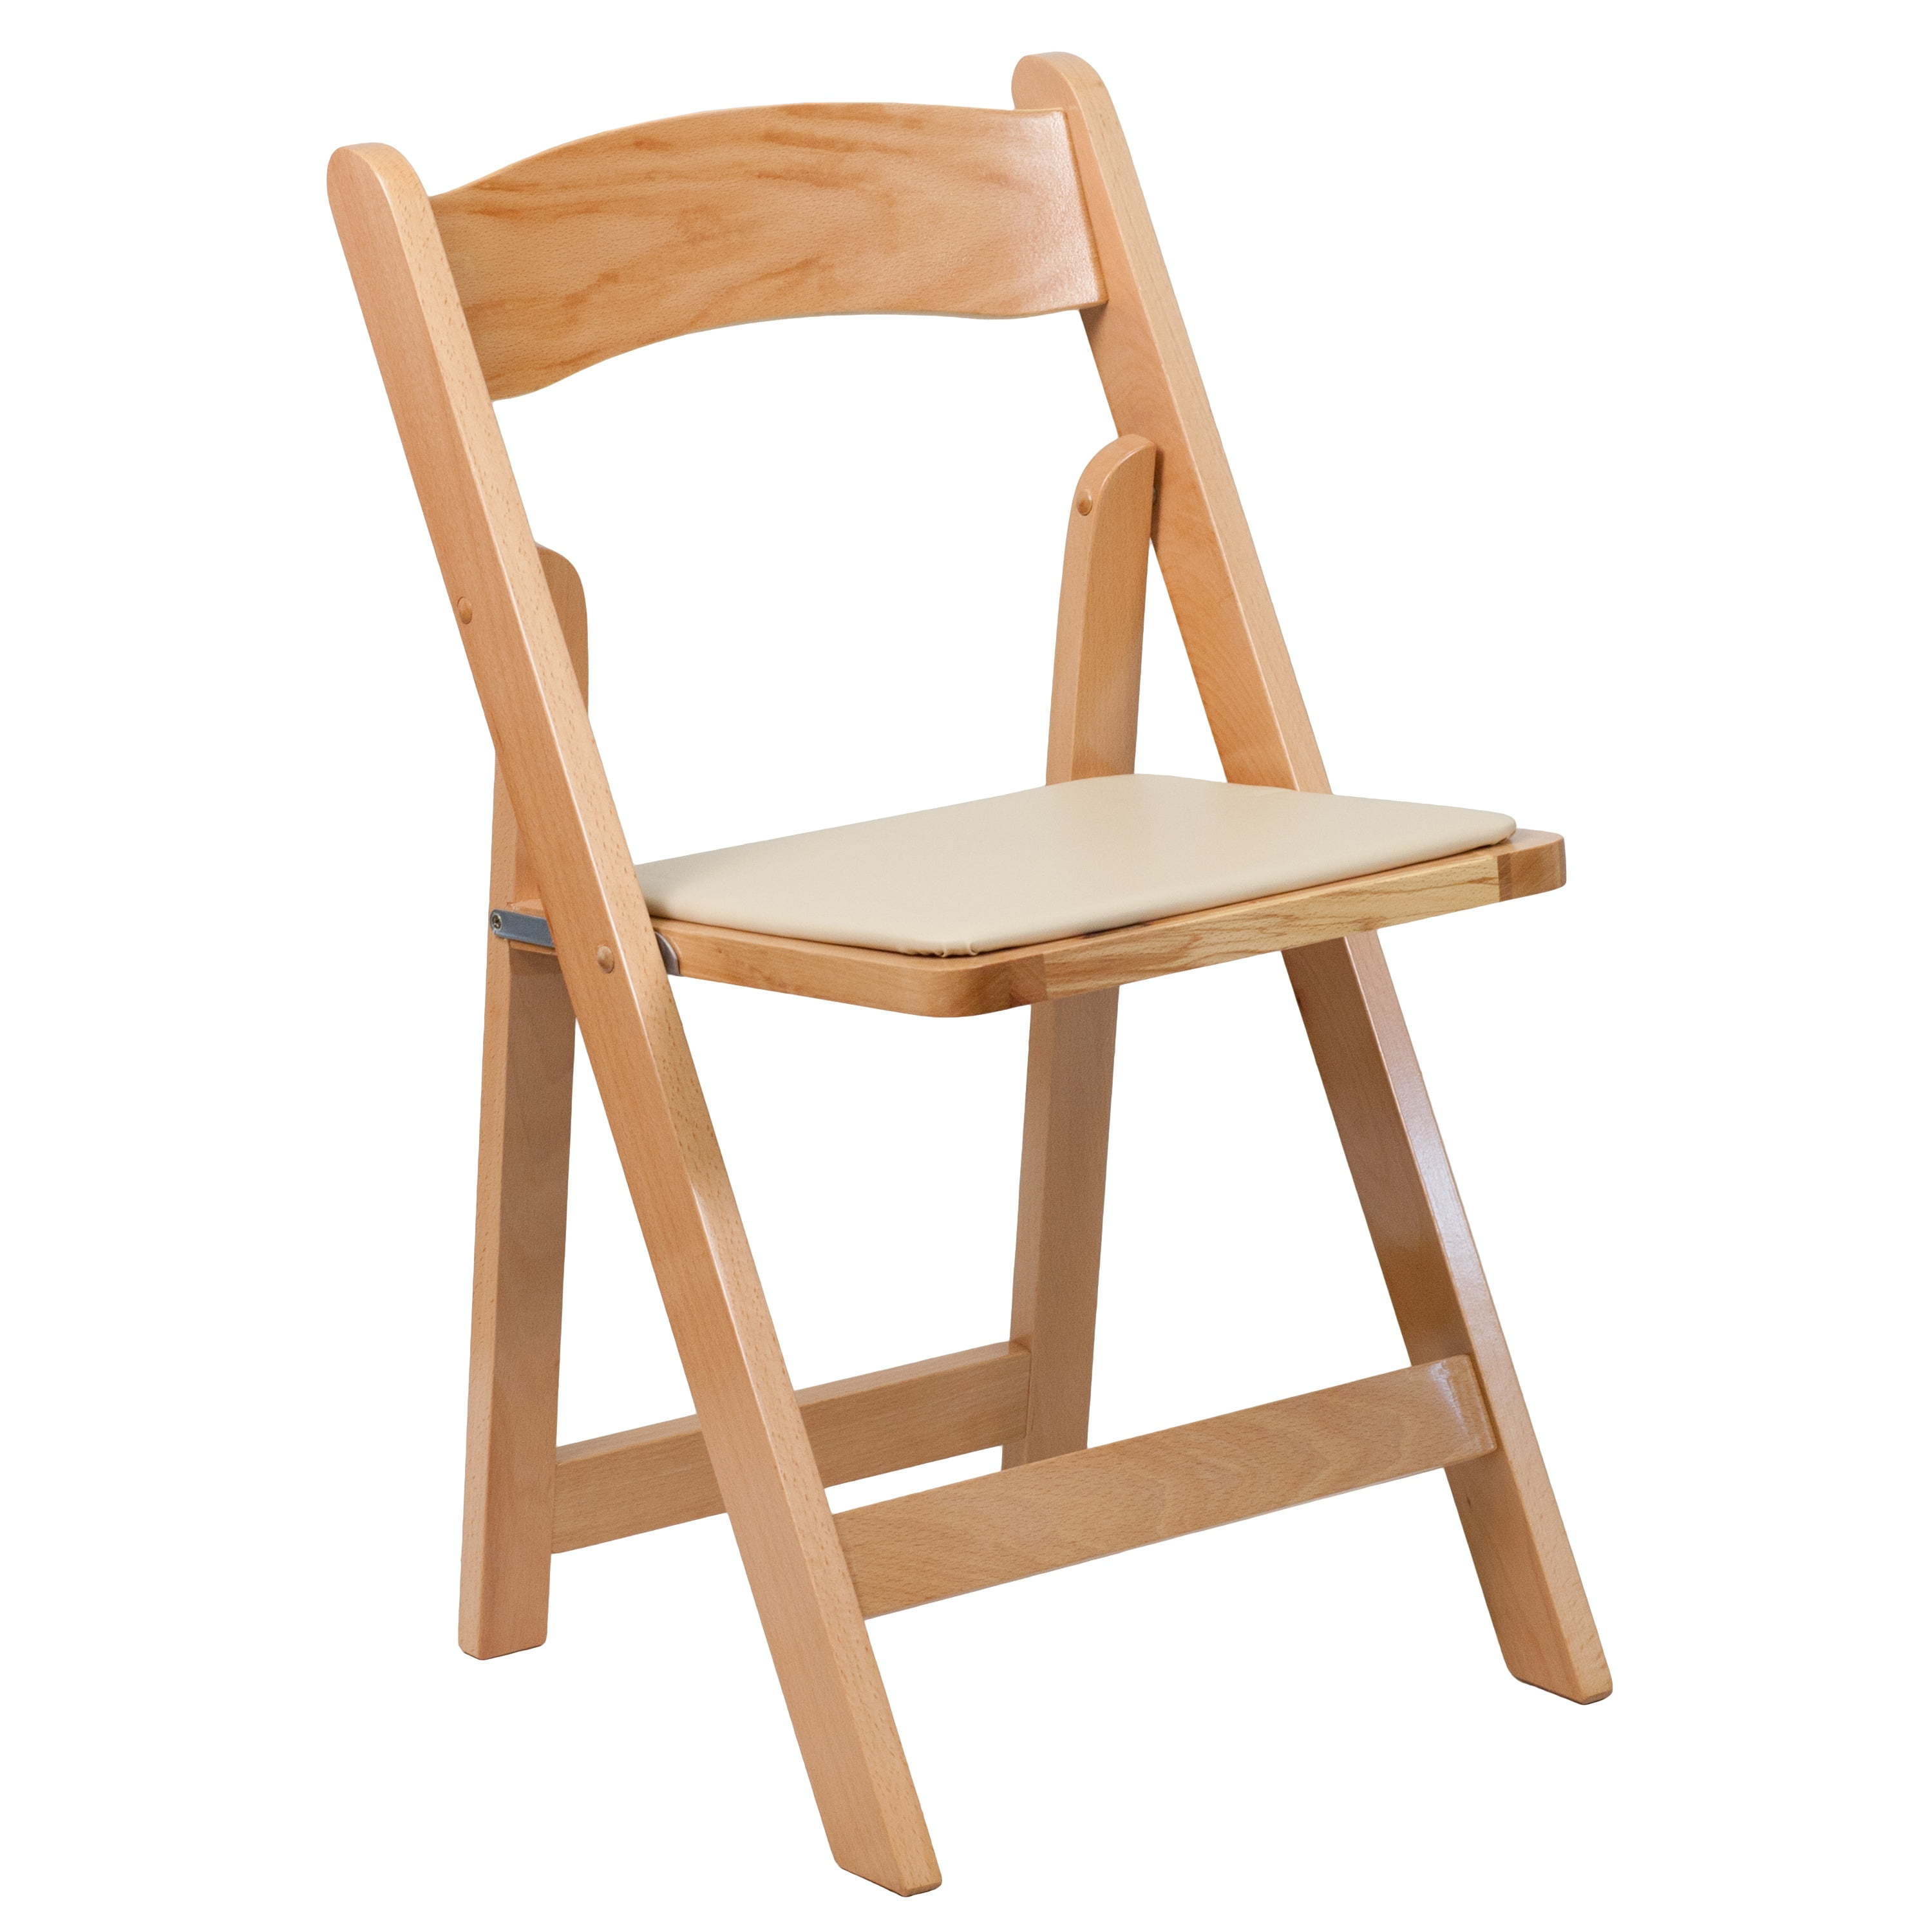 Недорогие складные стулья. Складные деревянные стулья. Складные стулья со спинкой деревянные. Складной стул дерево. Стул раскладной деревянный.